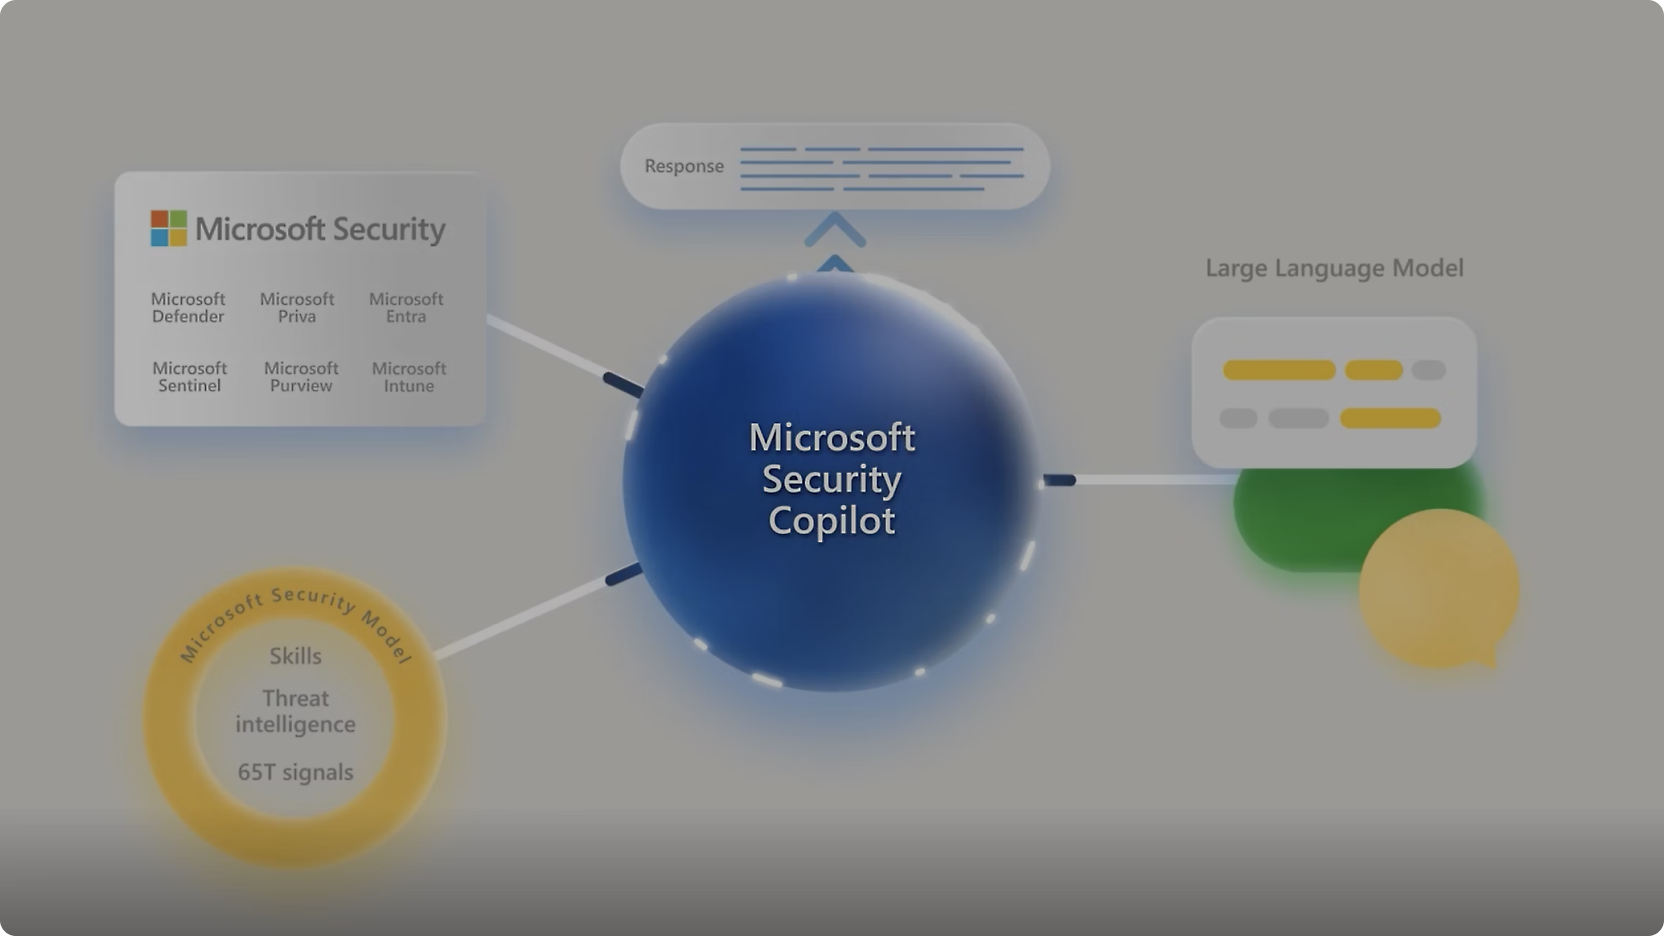 דיאגרמה המציגה במרכז את ‘Microsoft Copilot לאבטחה‘ עם חיבורים לכלים שונים של האבטחה של Microsoft